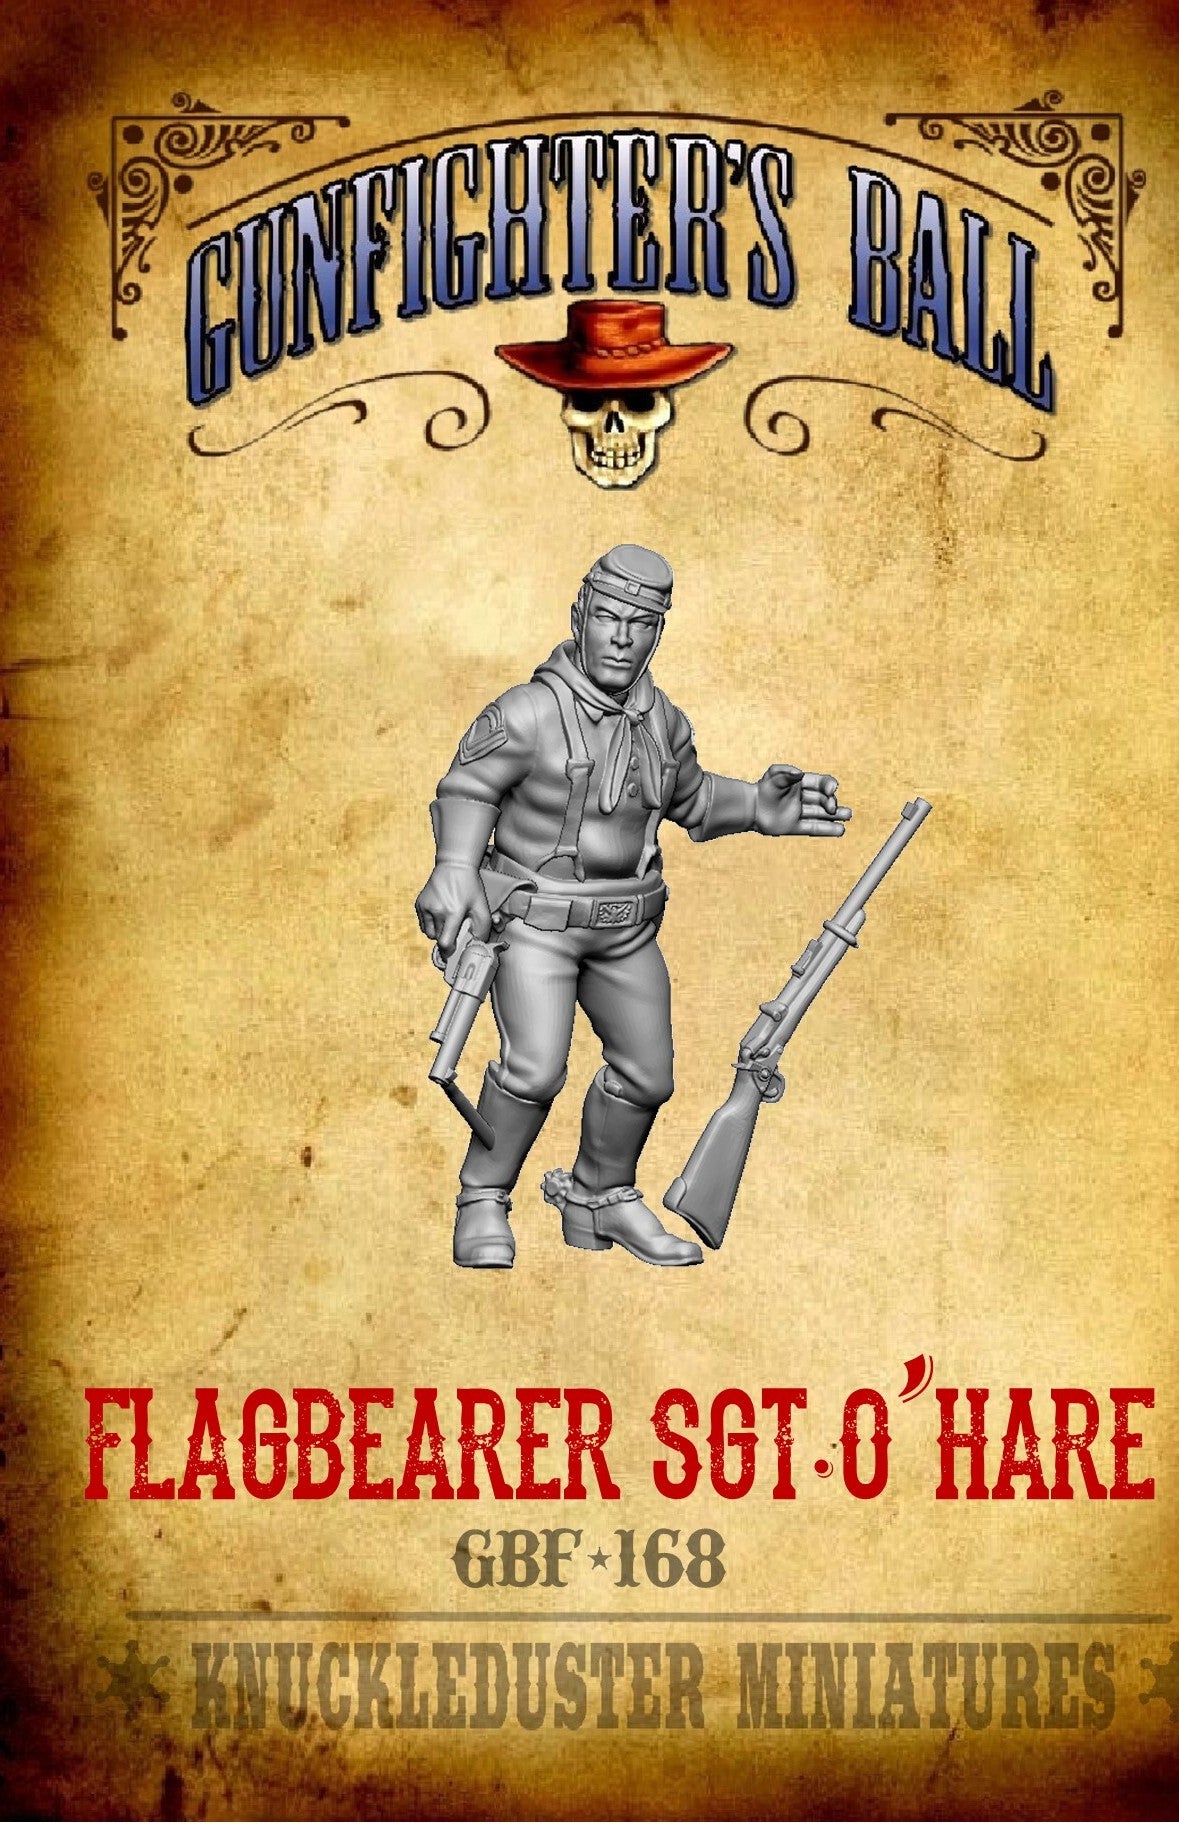 Flagbearer Sgt. O'Hare